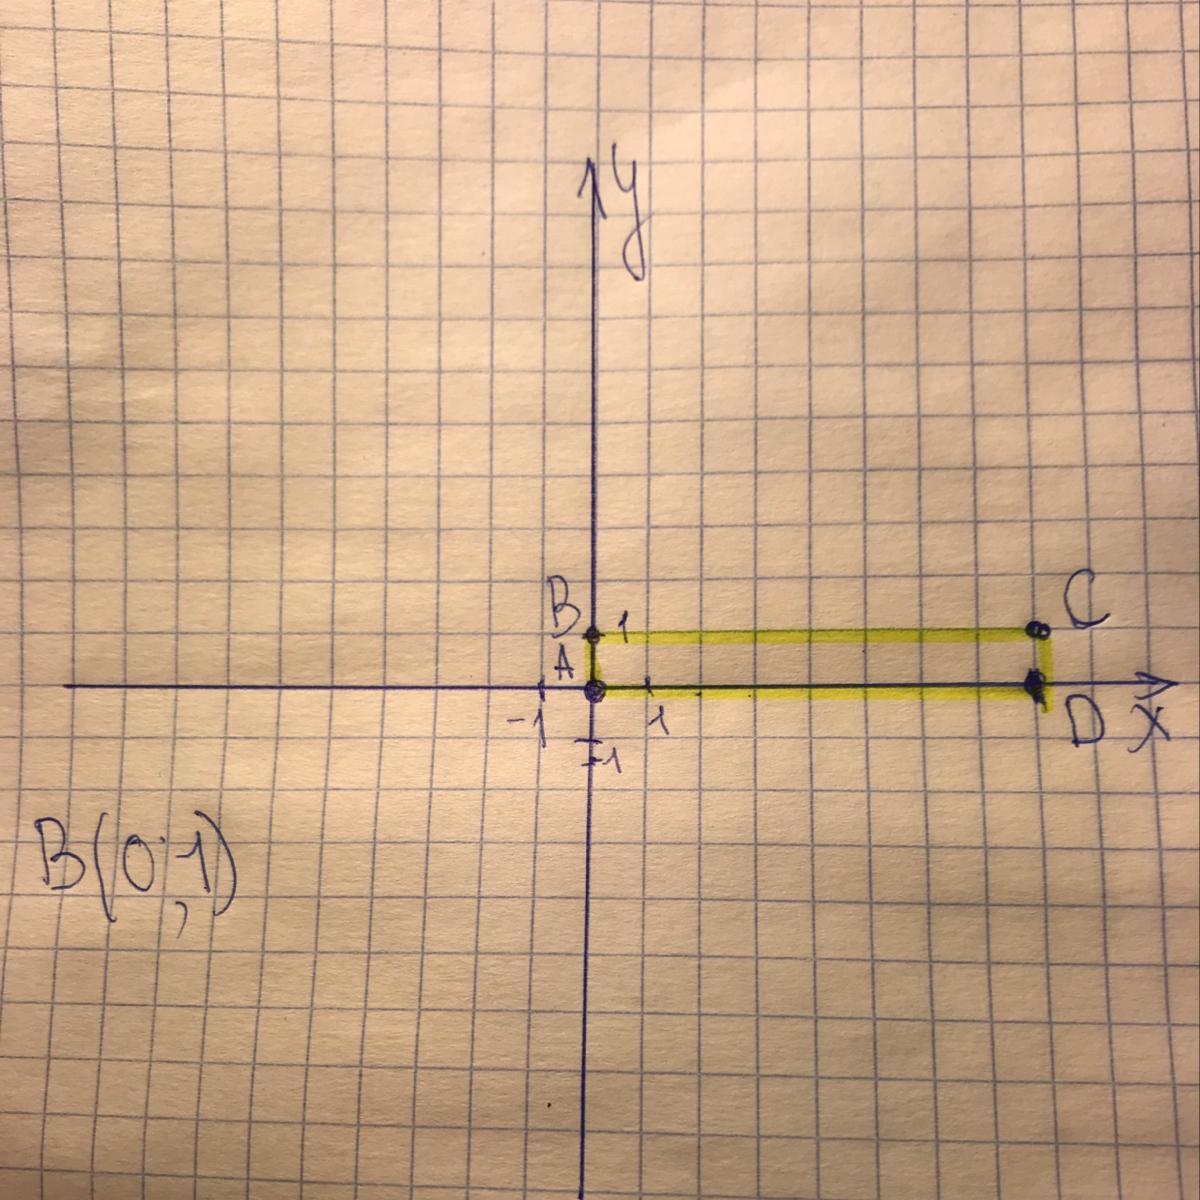 A b c вершины прямоугольника. Координаты вершин прямоугольника. Координаты вершин прямоугольника 2,1 и 5,8. A B C D вершины прямоугольника. Определи координаты вершин прямоугольника.